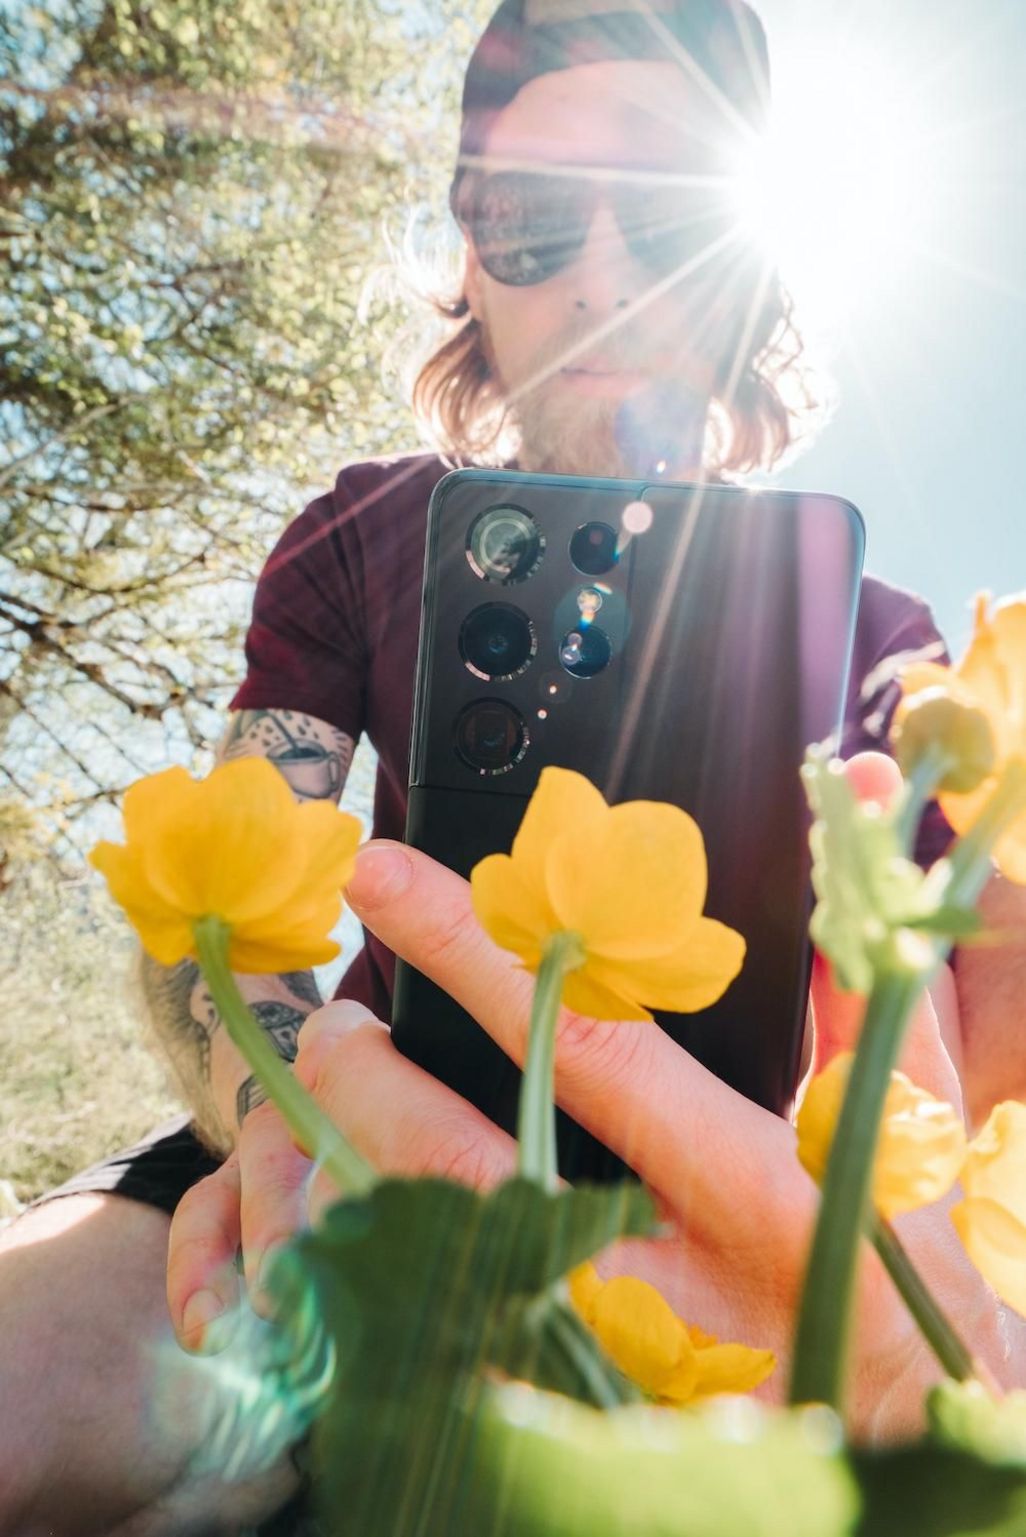 Makroaufnahmen von einer Blume mit dem Smartphone anfertigen.